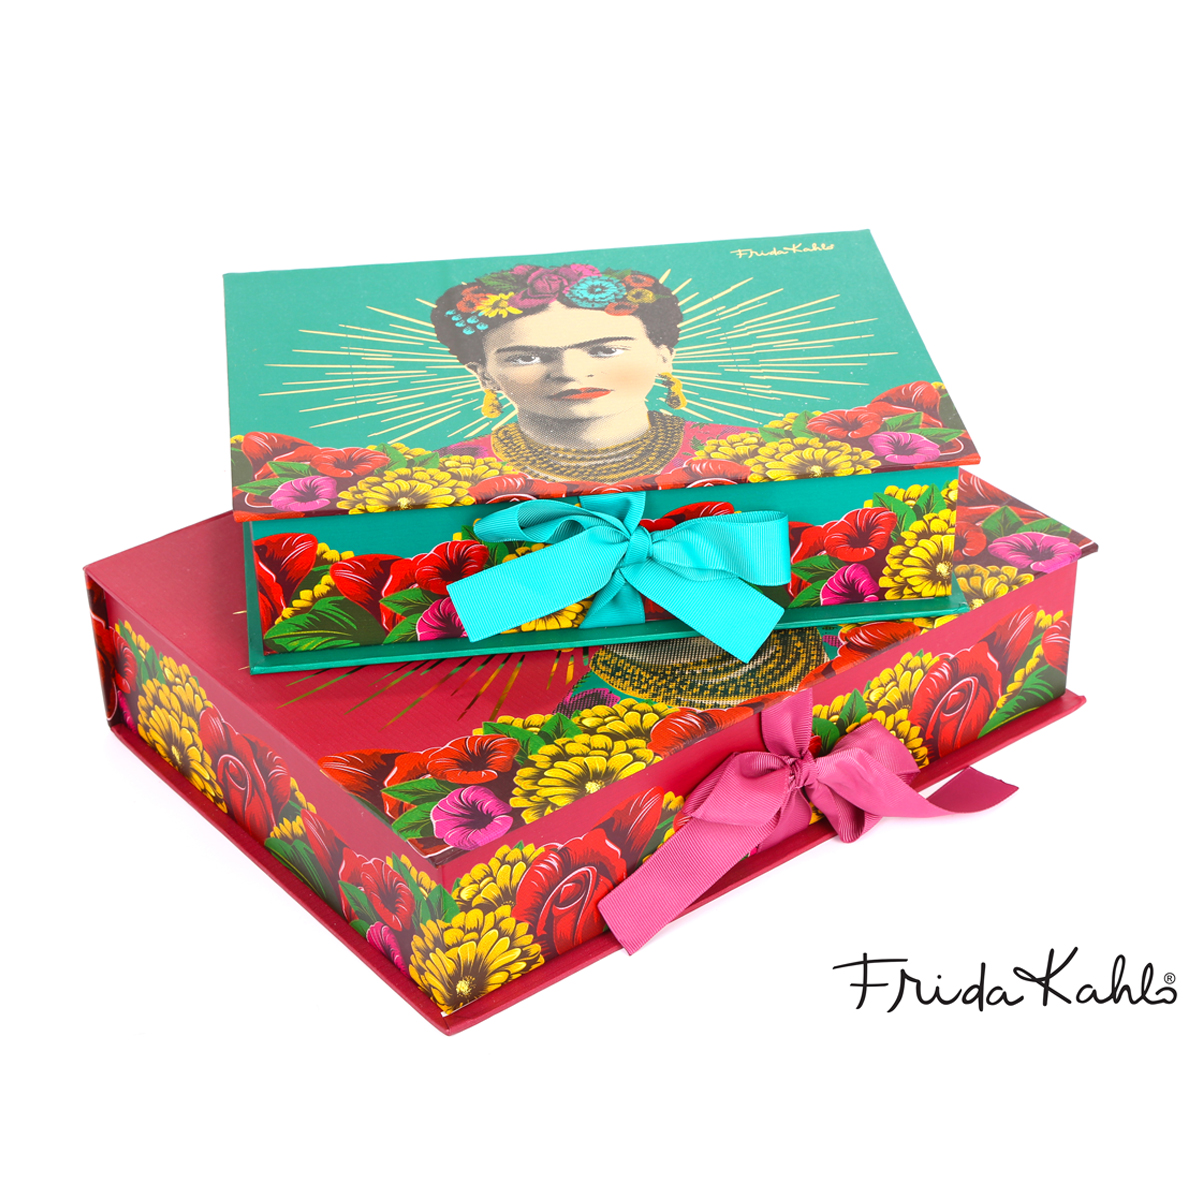 2 boites gigognes \'Frida Kahlo\' vert rouge - 33x24x8 cm et 28x20x7 cm - [A0606]